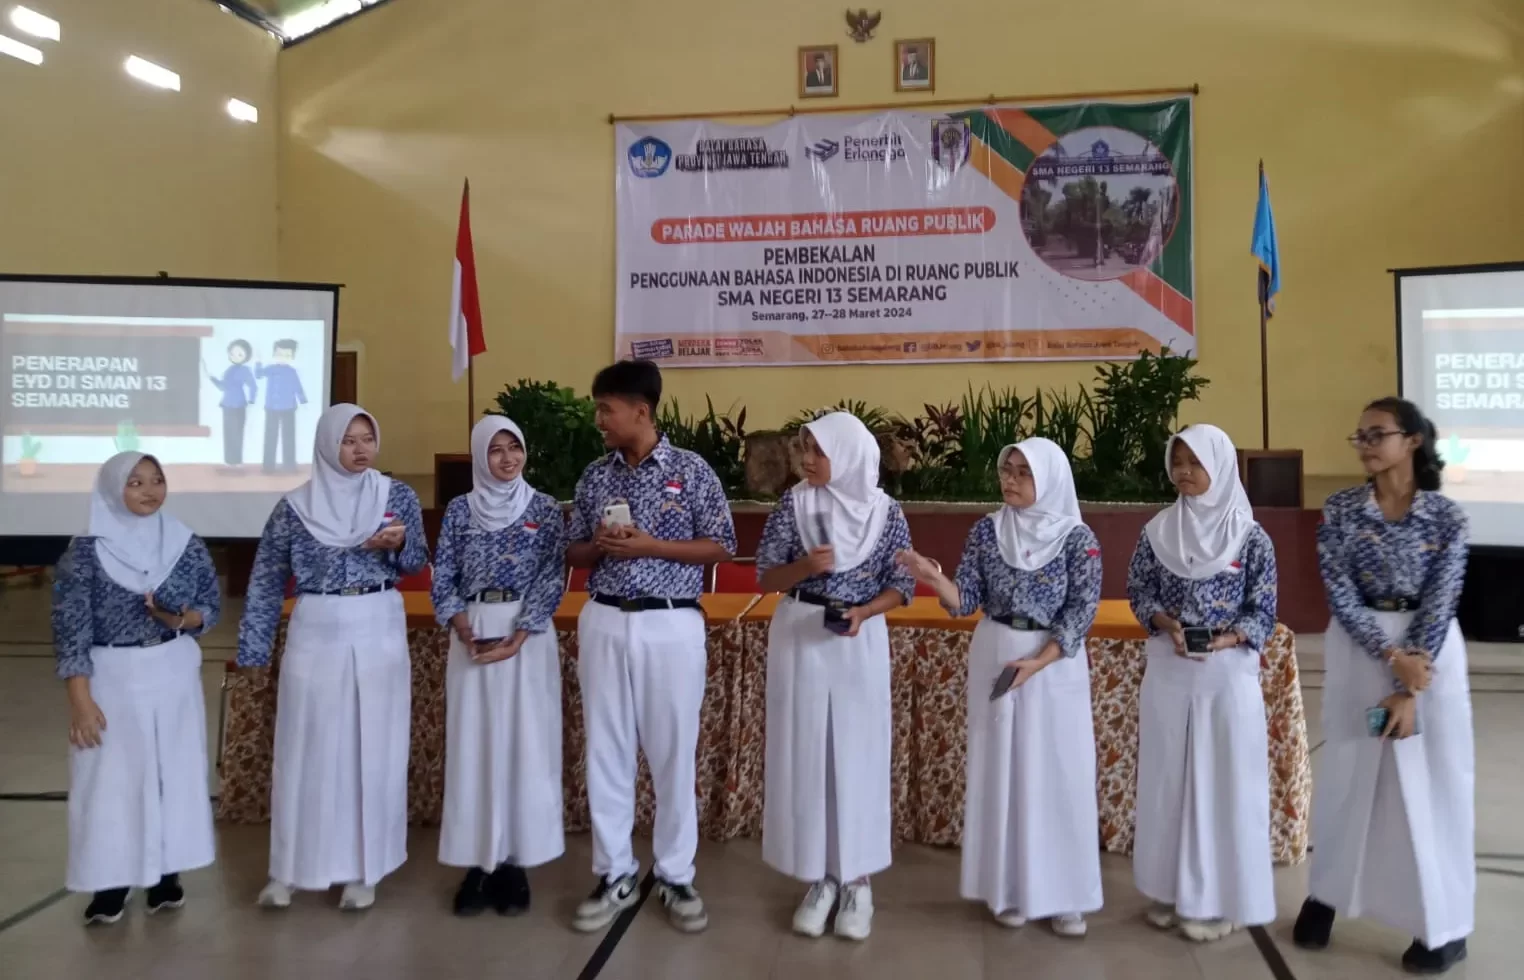 Balai Bahasa Provinsi Jawa Tengah laksanakan Pembekalan Penggunaan Bahasa Indonesia di Ruang Publik Sekolah